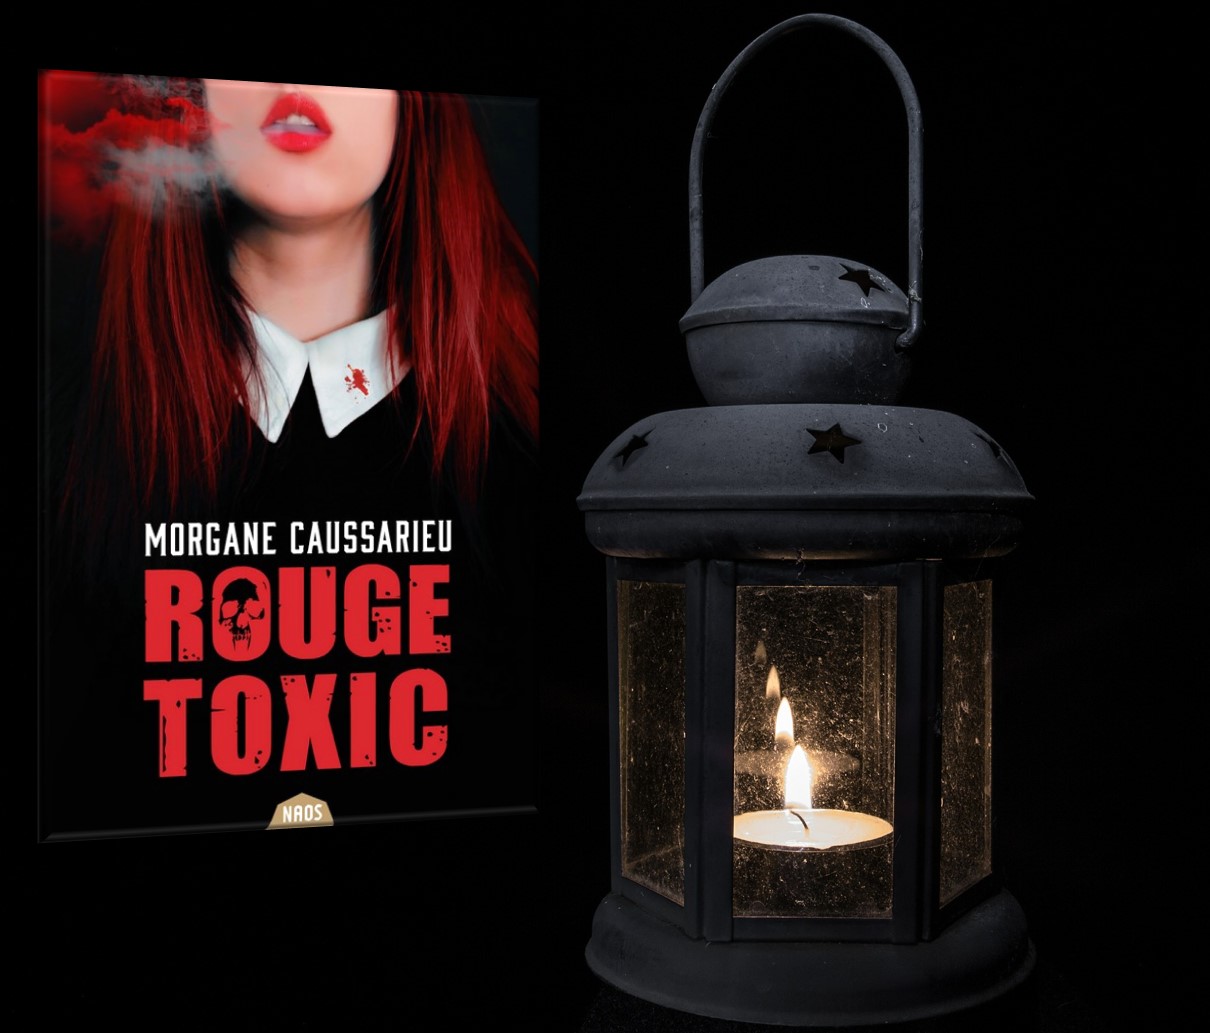 Lire la suite à propos de l’article Rouge Toxic de Morgane Caussarieu